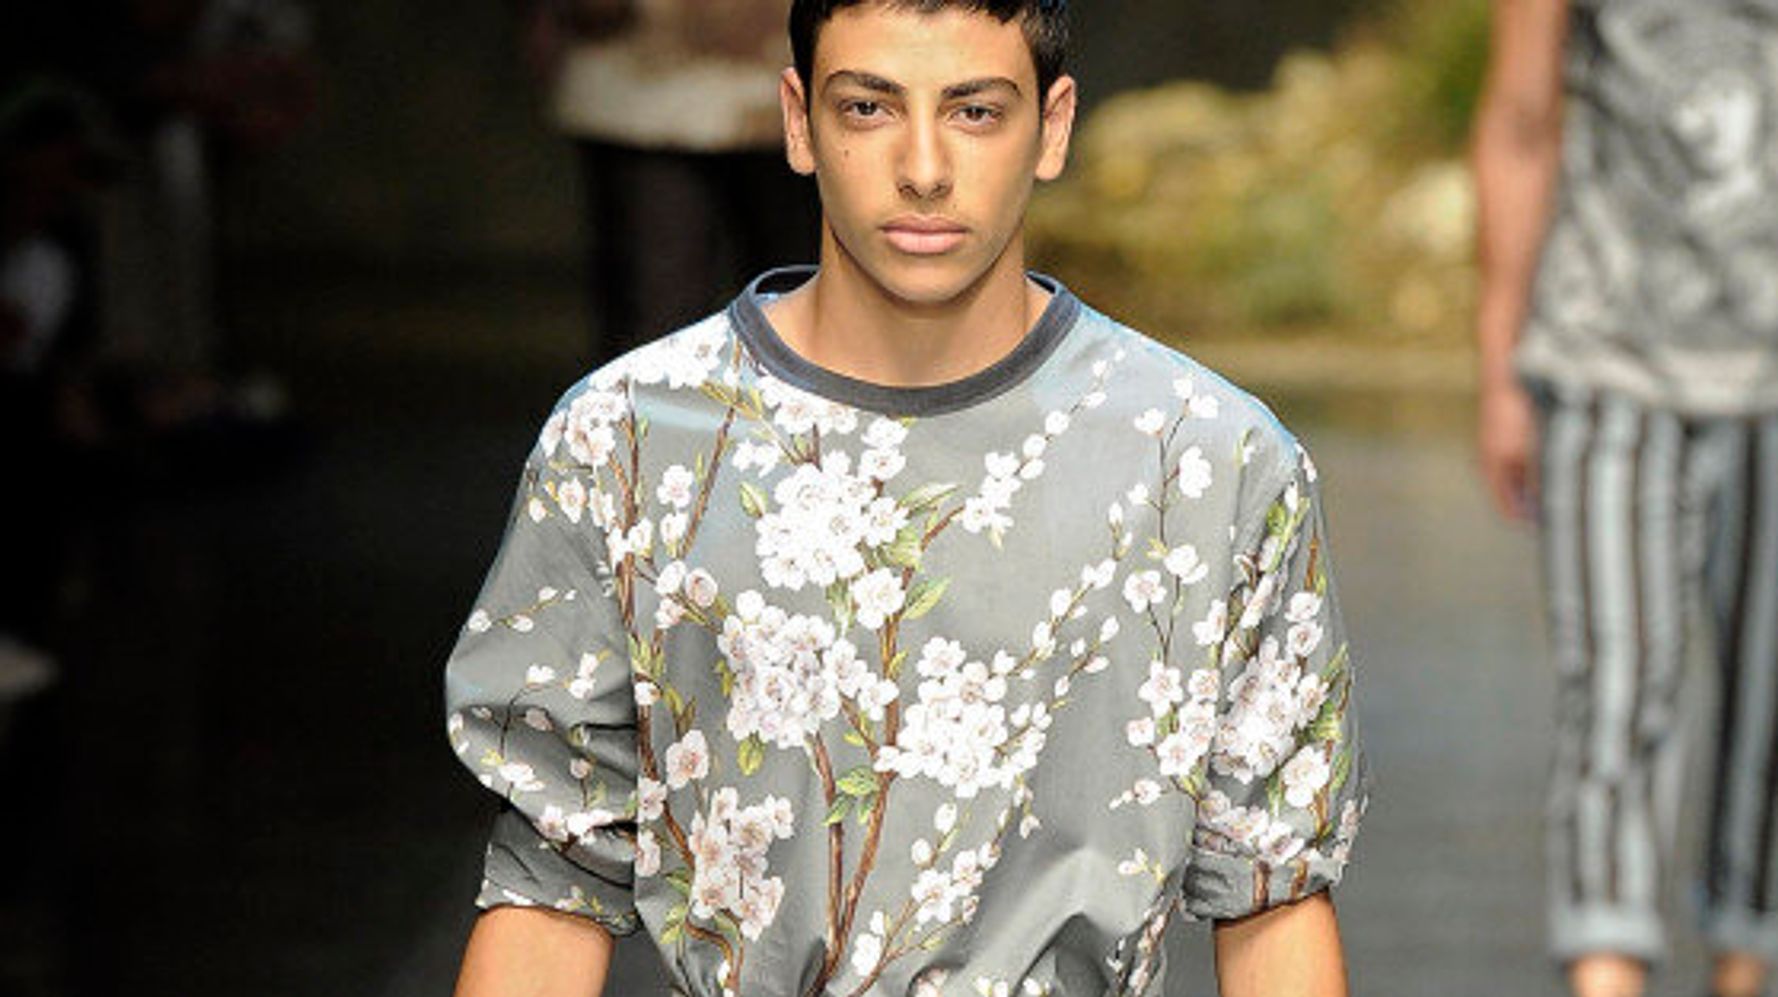 FALL 2013 MENSWEAR Louis Vuitton  Floral suit men, Mens fashion suits, Men  style tips